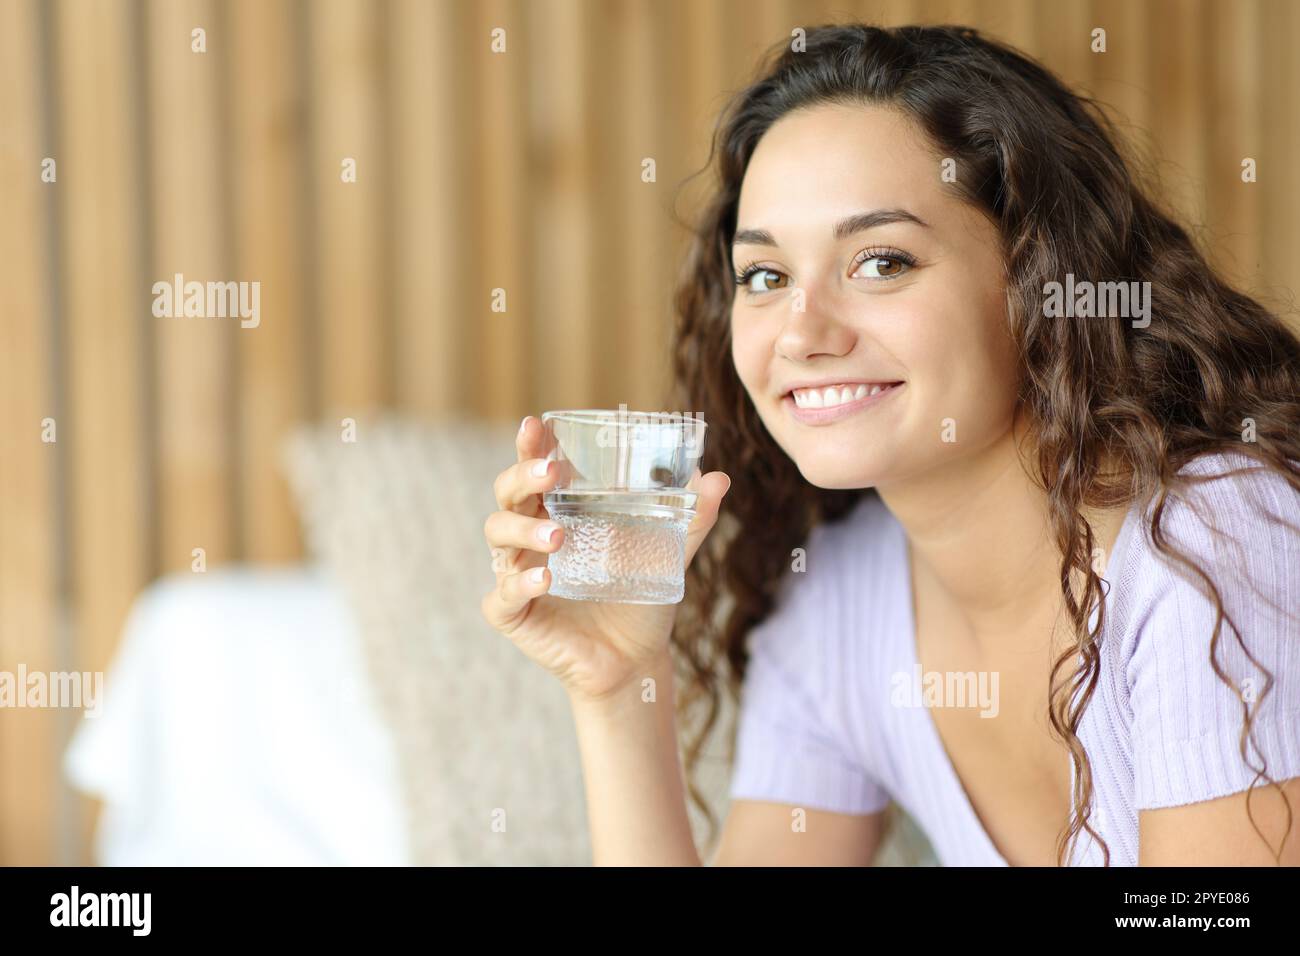 Une femme heureuse tenant un verre d'eau te regarde Banque D'Images